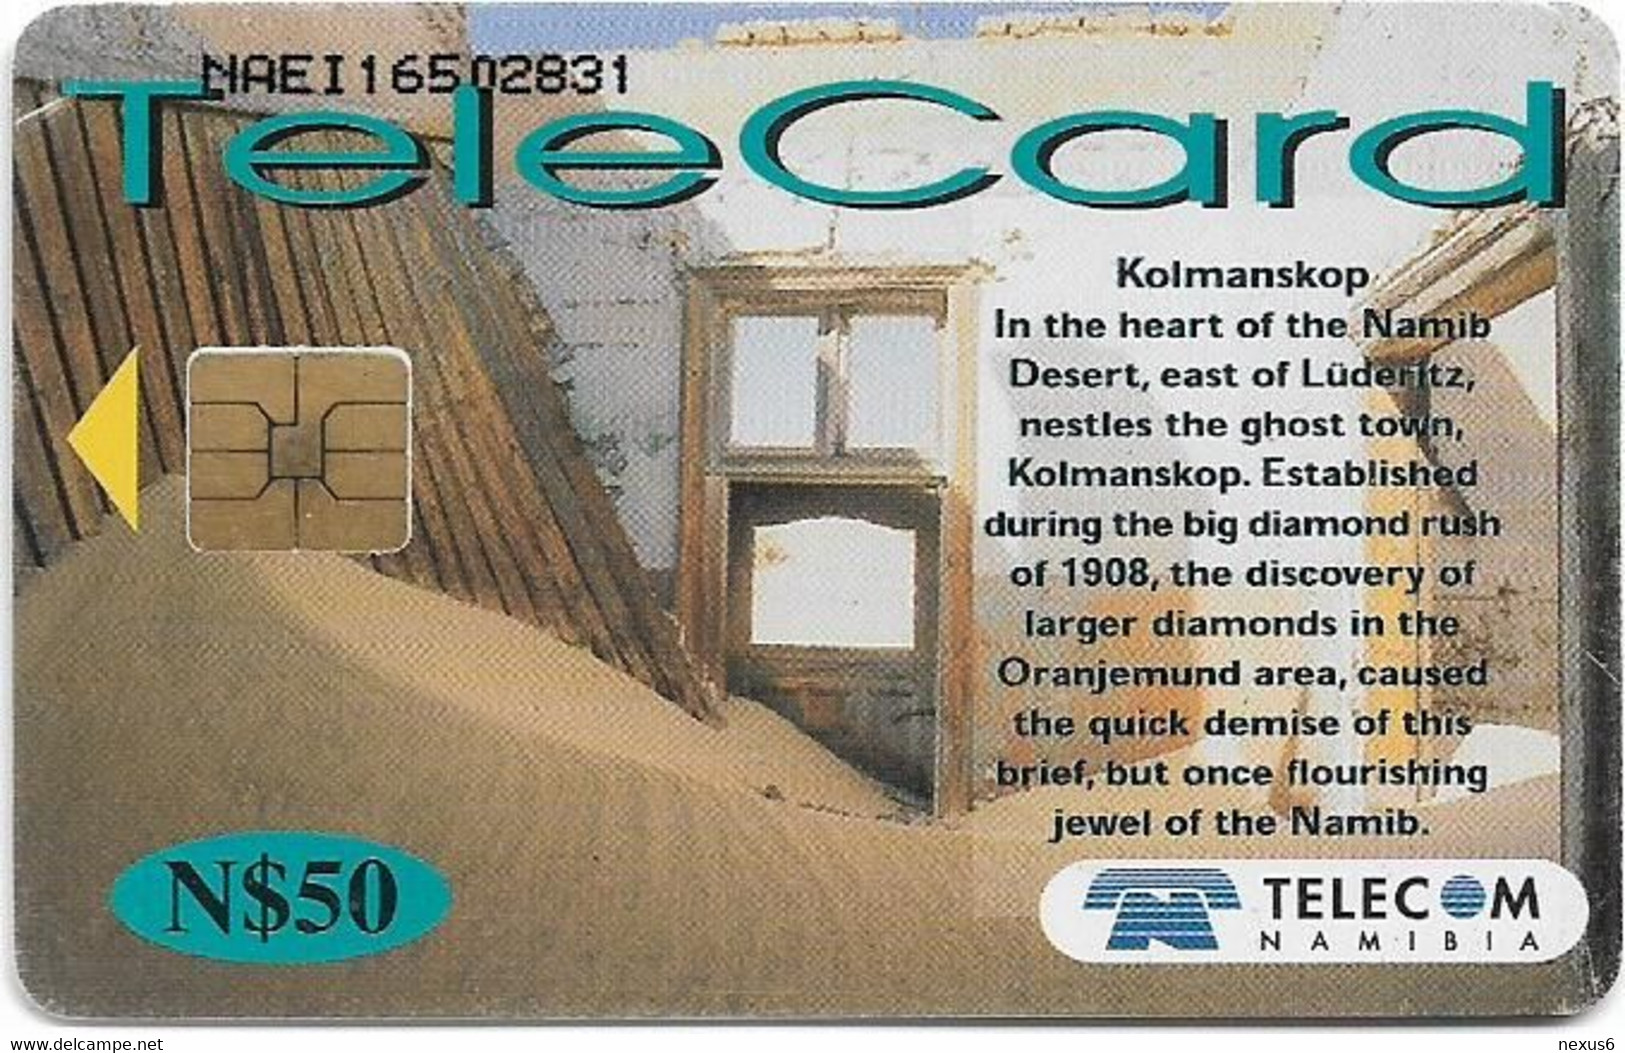 Namibia - Telecom Namibia - Places Of Interest, Kolmanskop, 2001, 50$, Used - Namibie